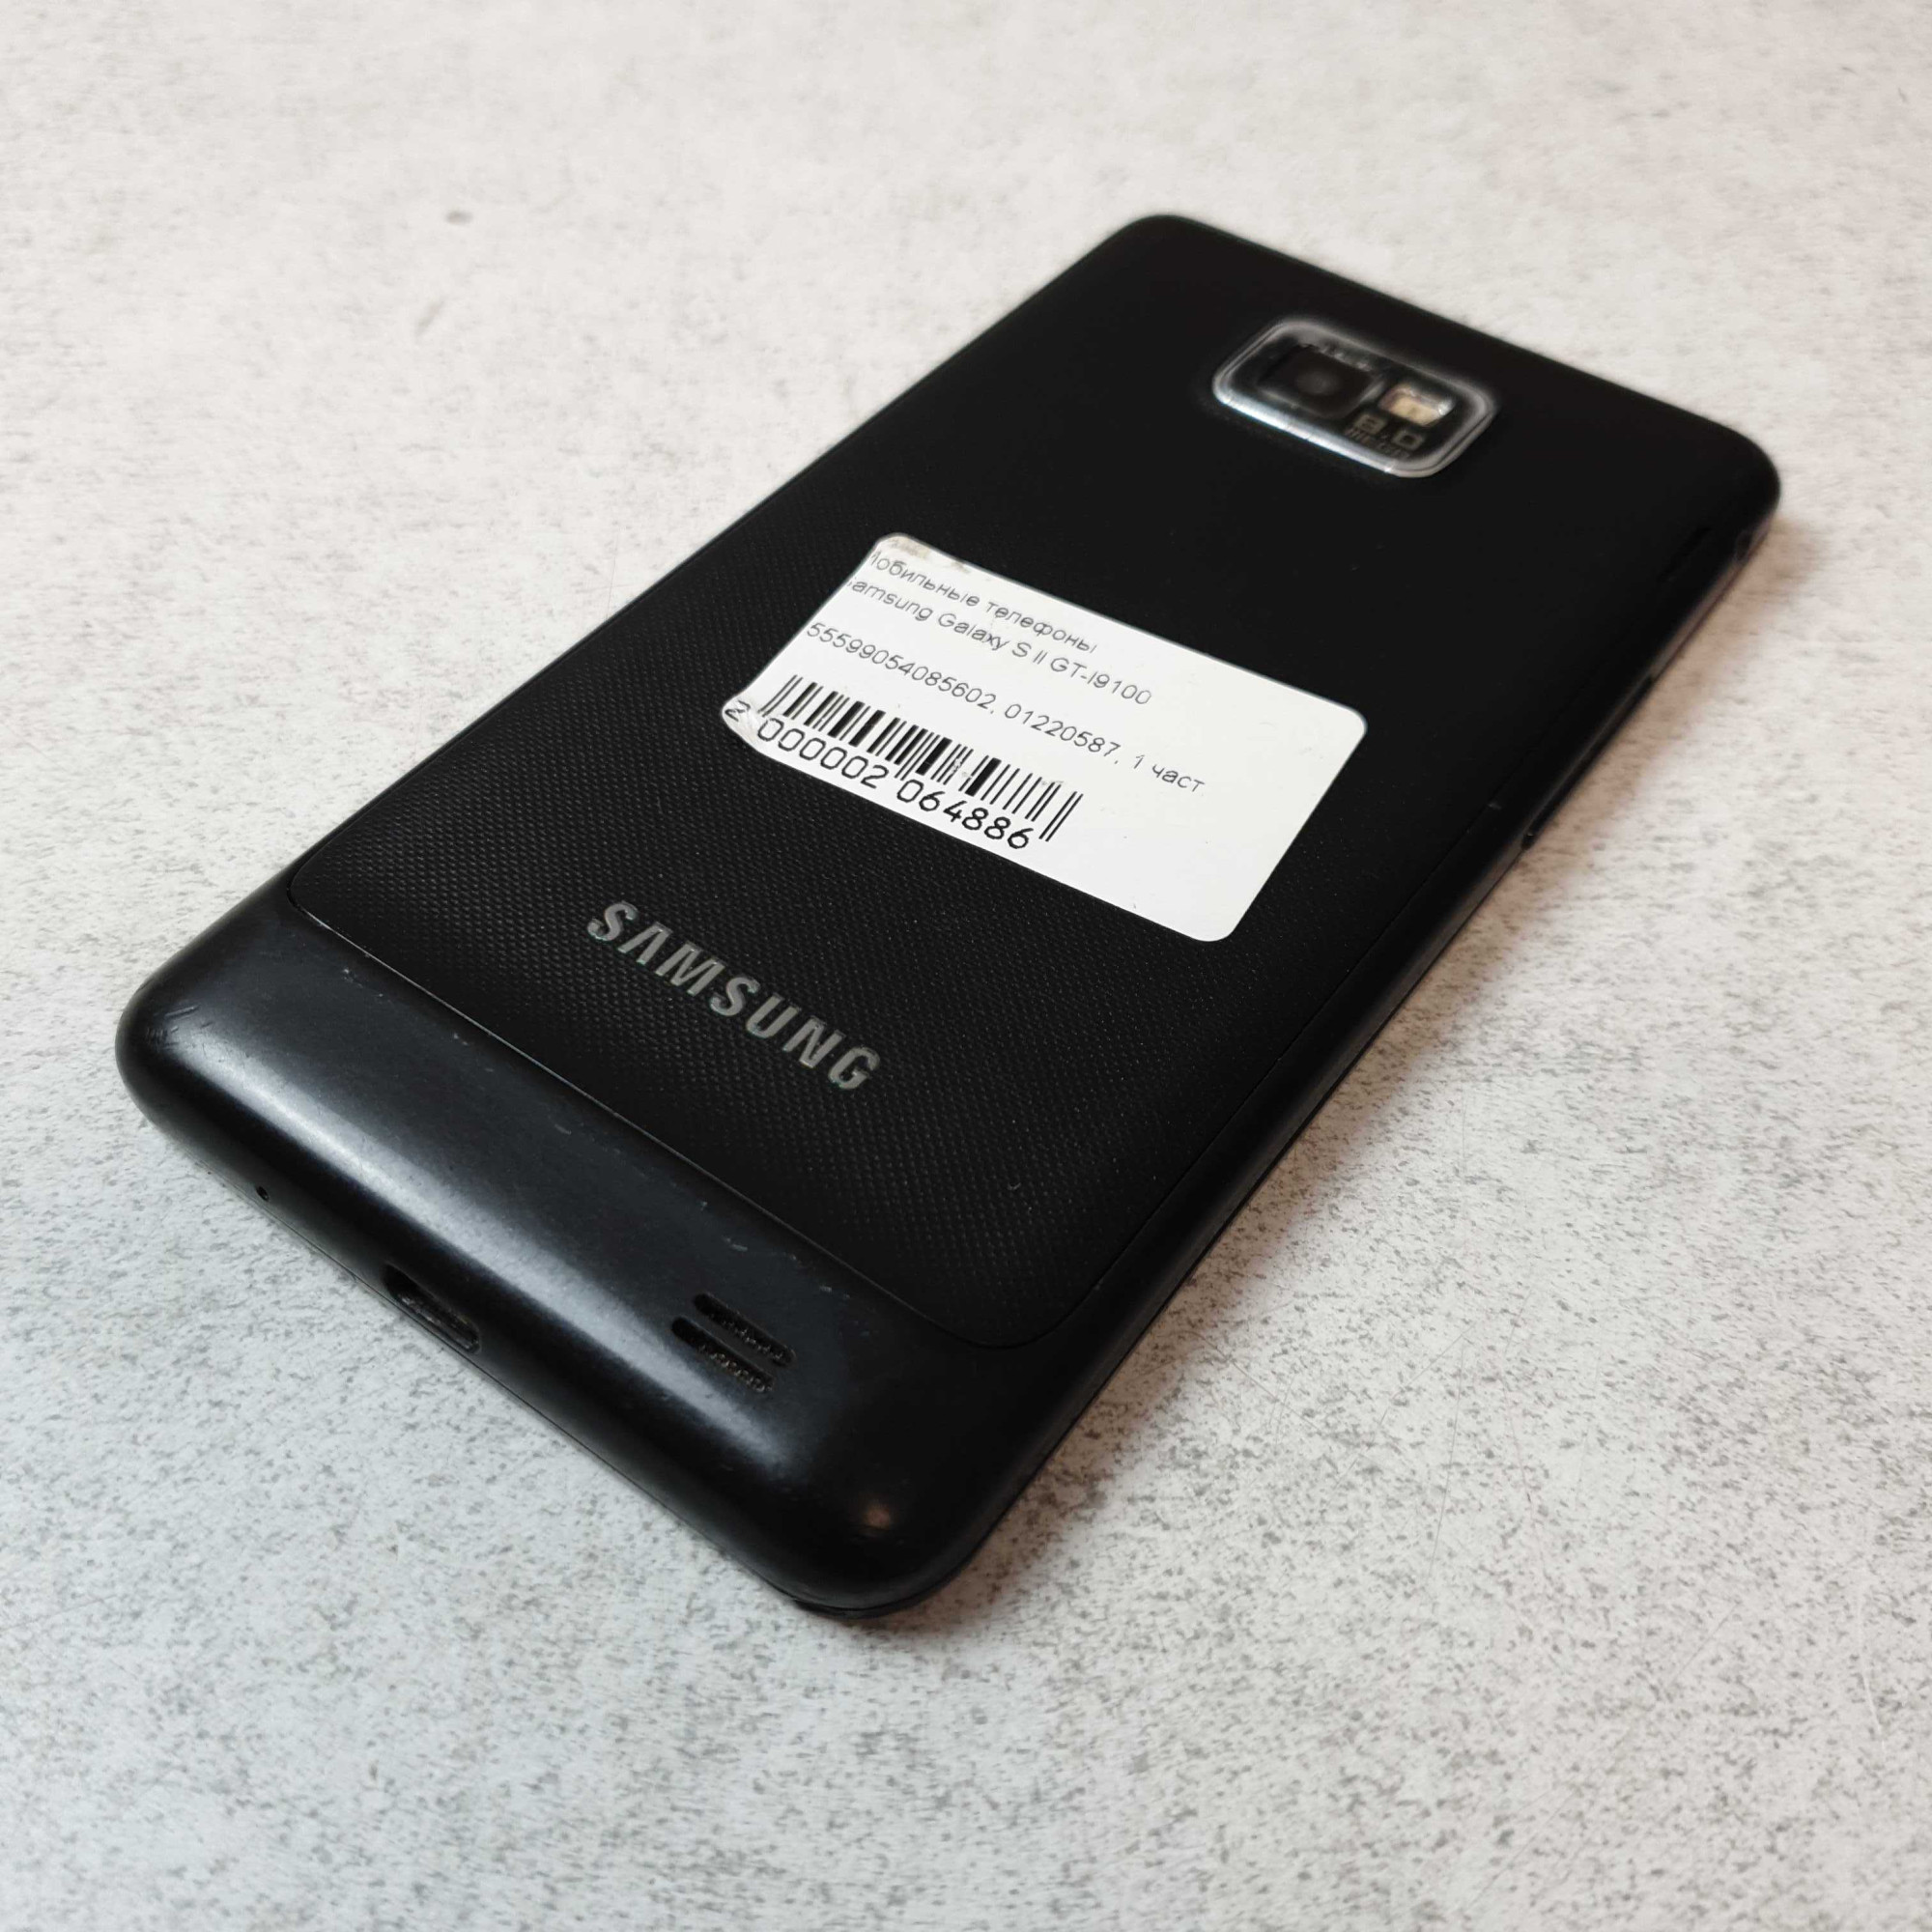 Samsung Galaxy S2 (GT-I9100) 1/16Gb  10